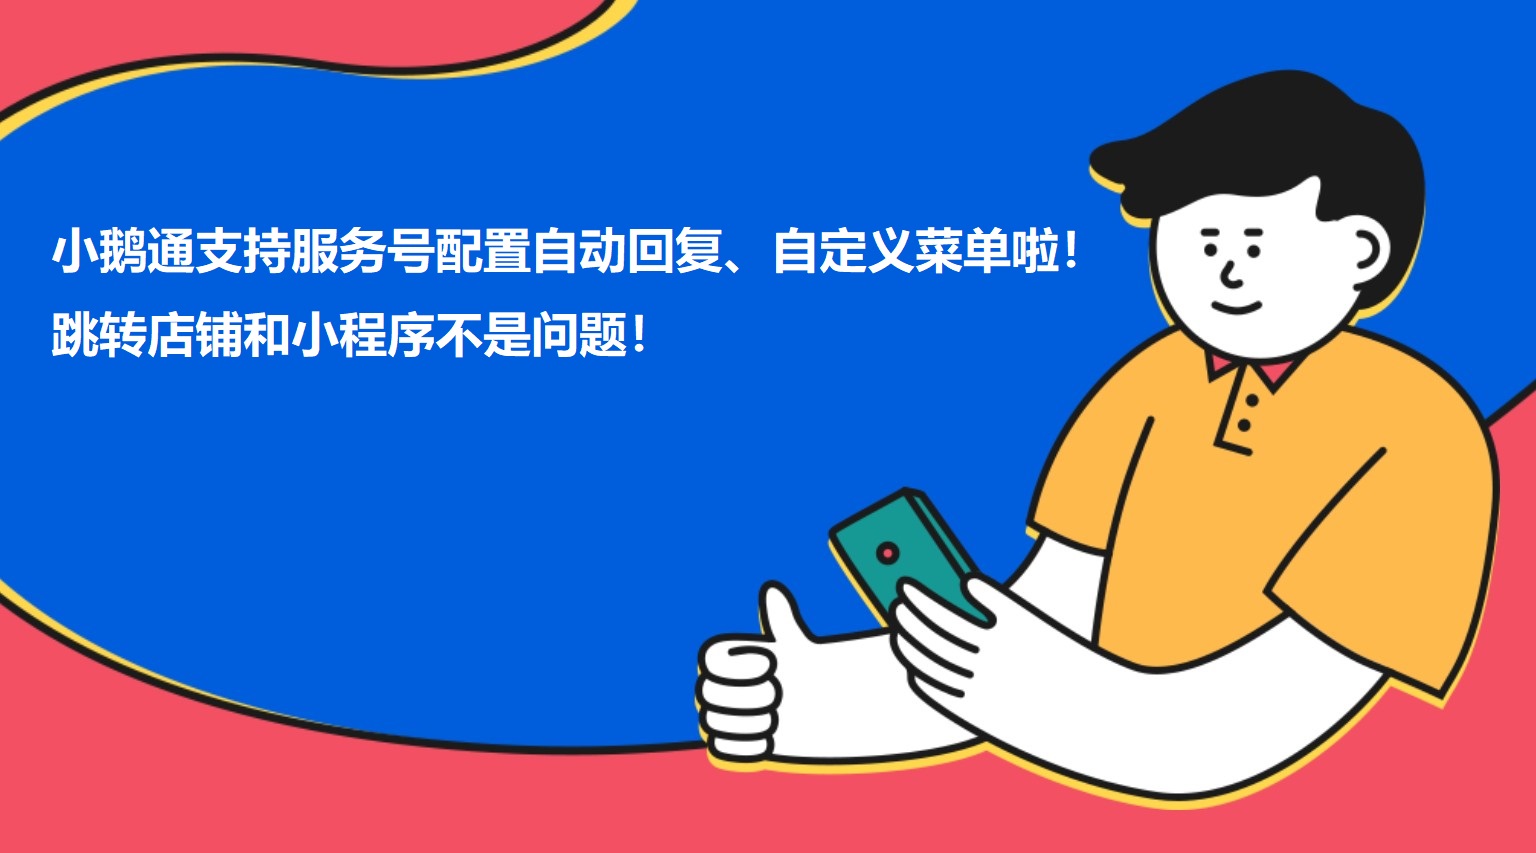 青海小鹅通支持服务号配置自动回复、自定义菜单啦！跳转店铺和小程序不是问题！